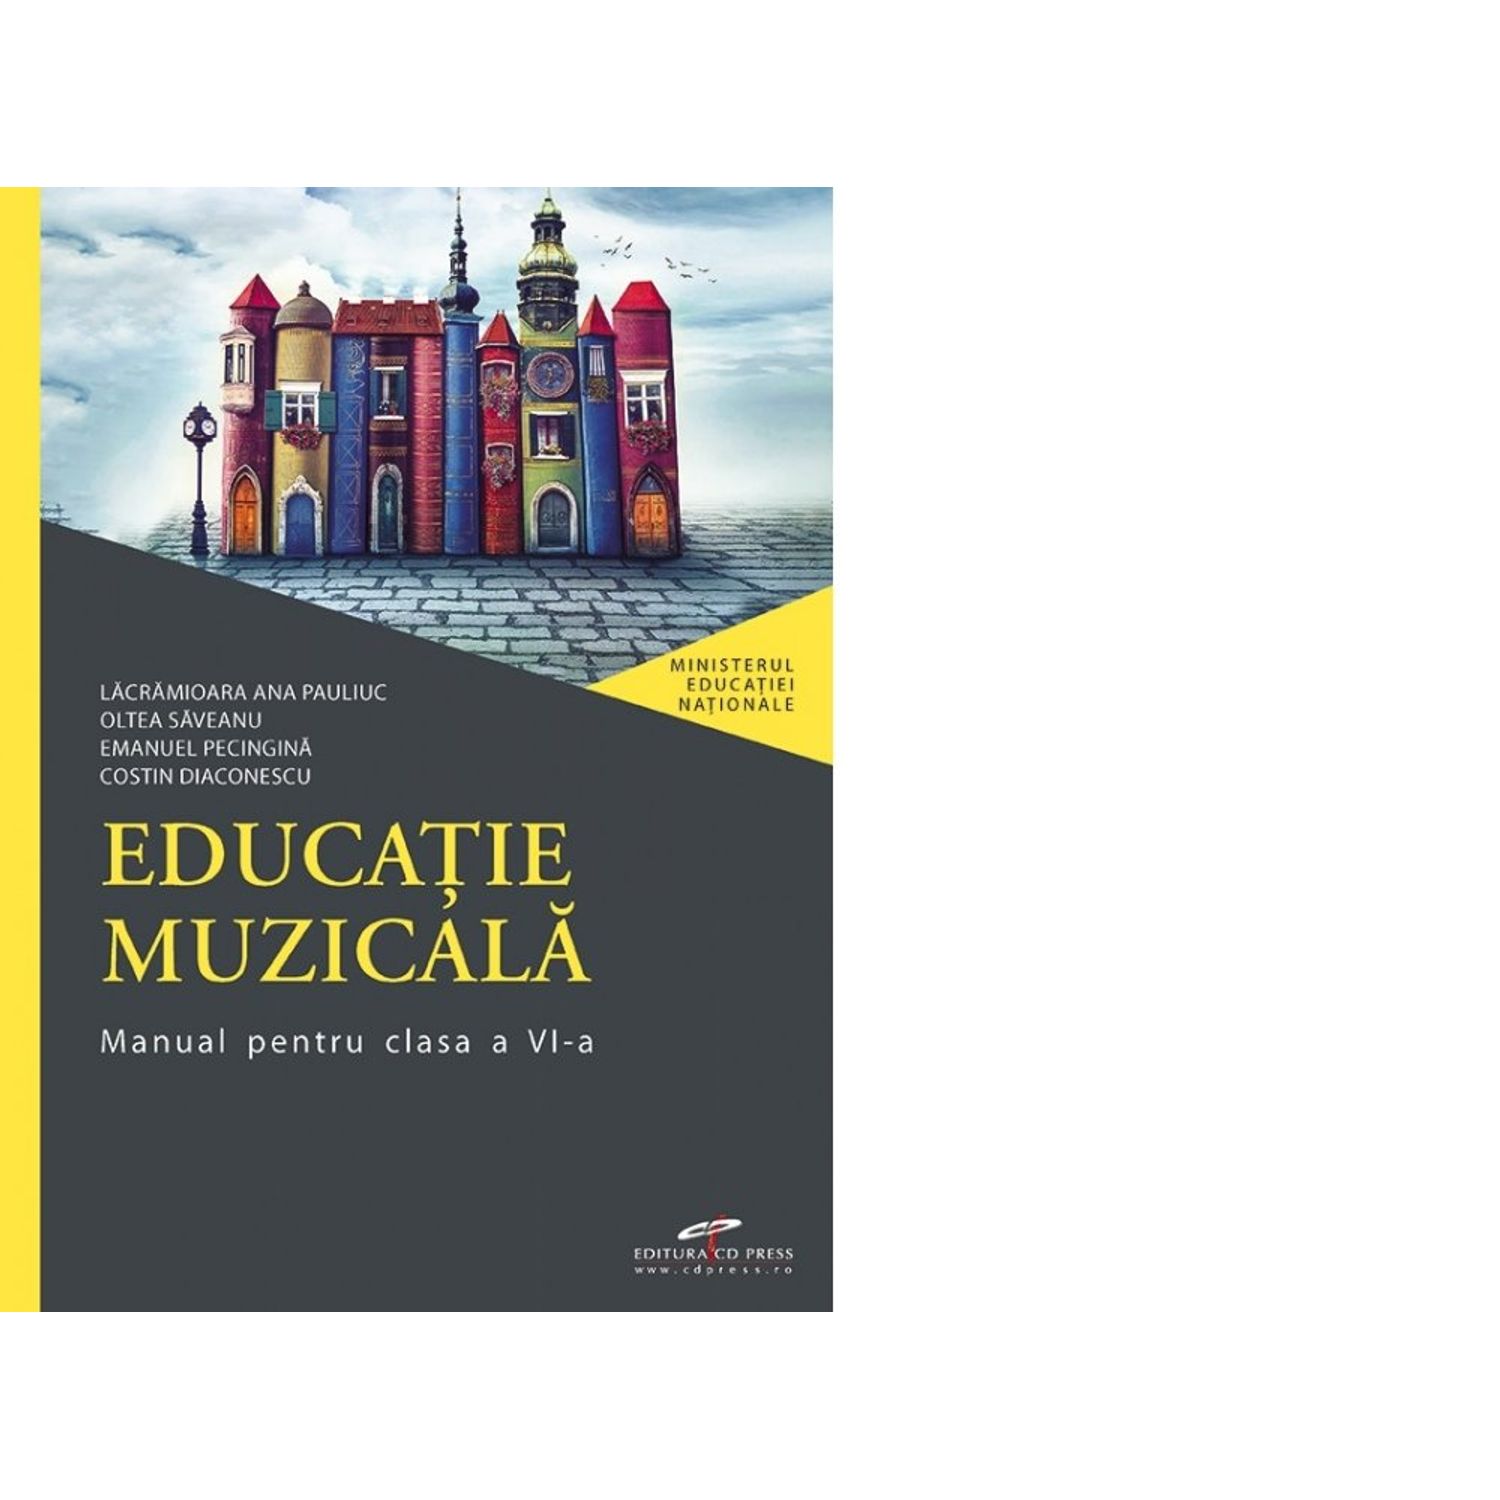 Educatie muzicala. Manual pentru clasa a VI-a,391772